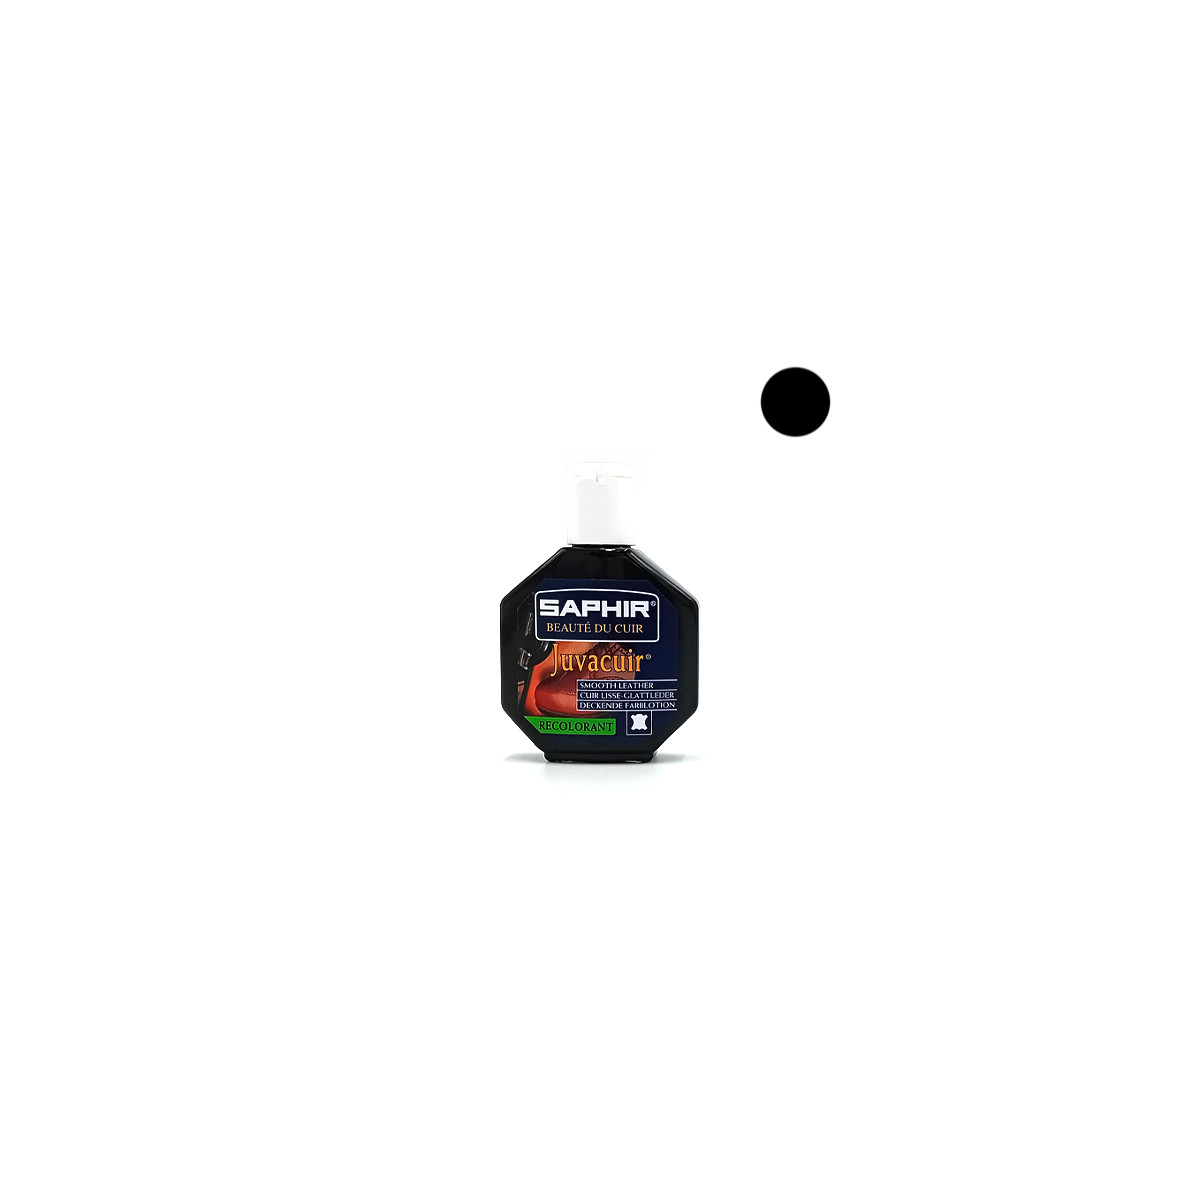 Juvacuir Saphir - Teinture recolorante cuir lisse 75ml